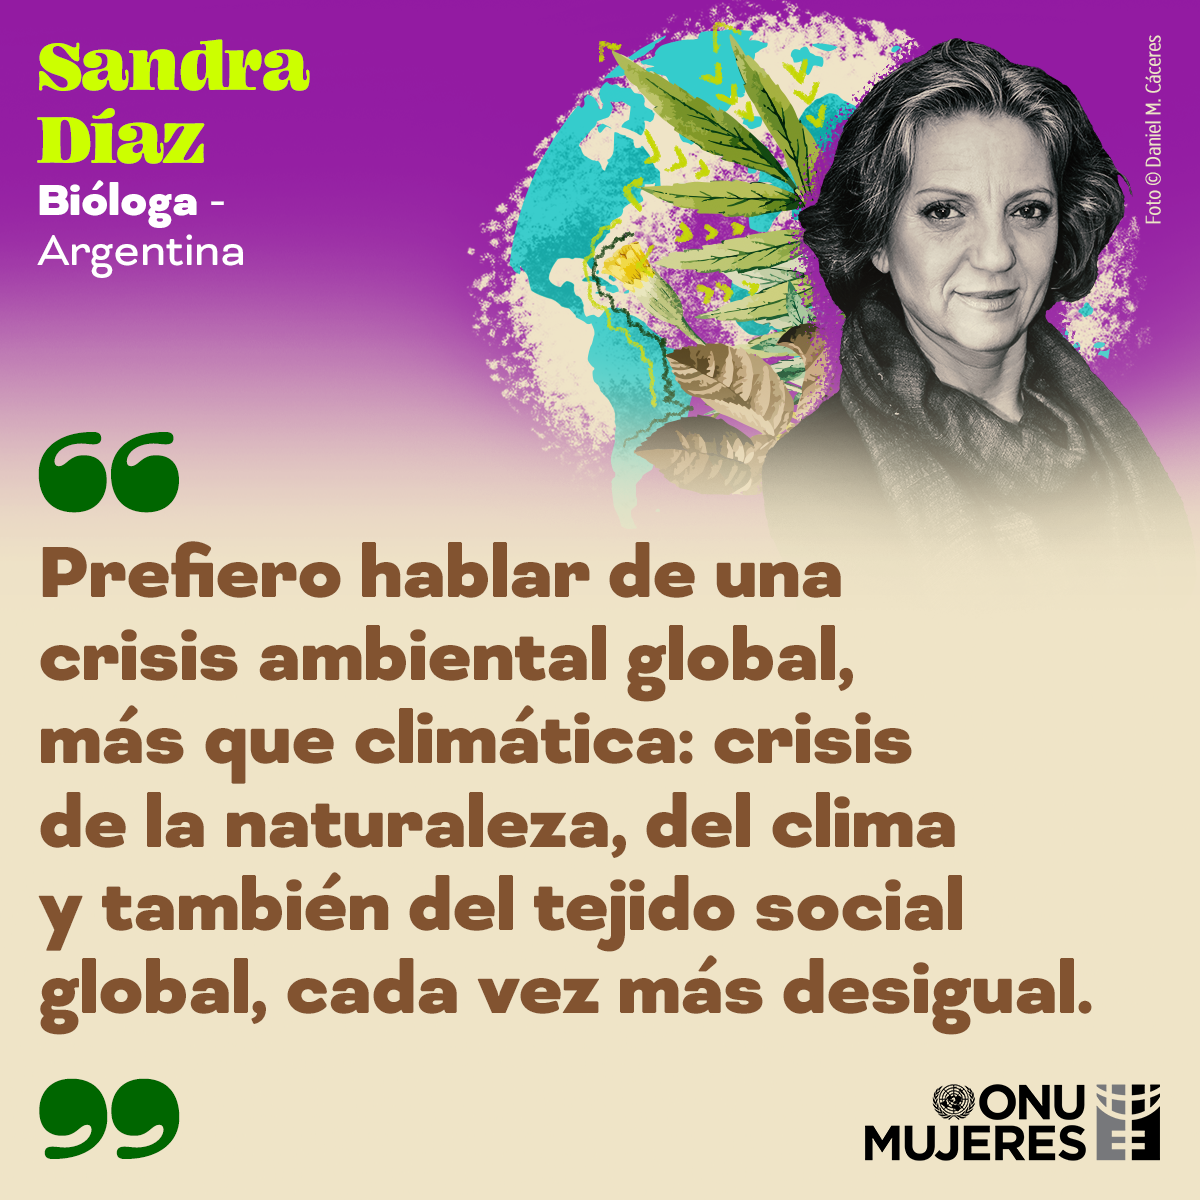 SandraDiaz-Argentina-DiaMadreTierra